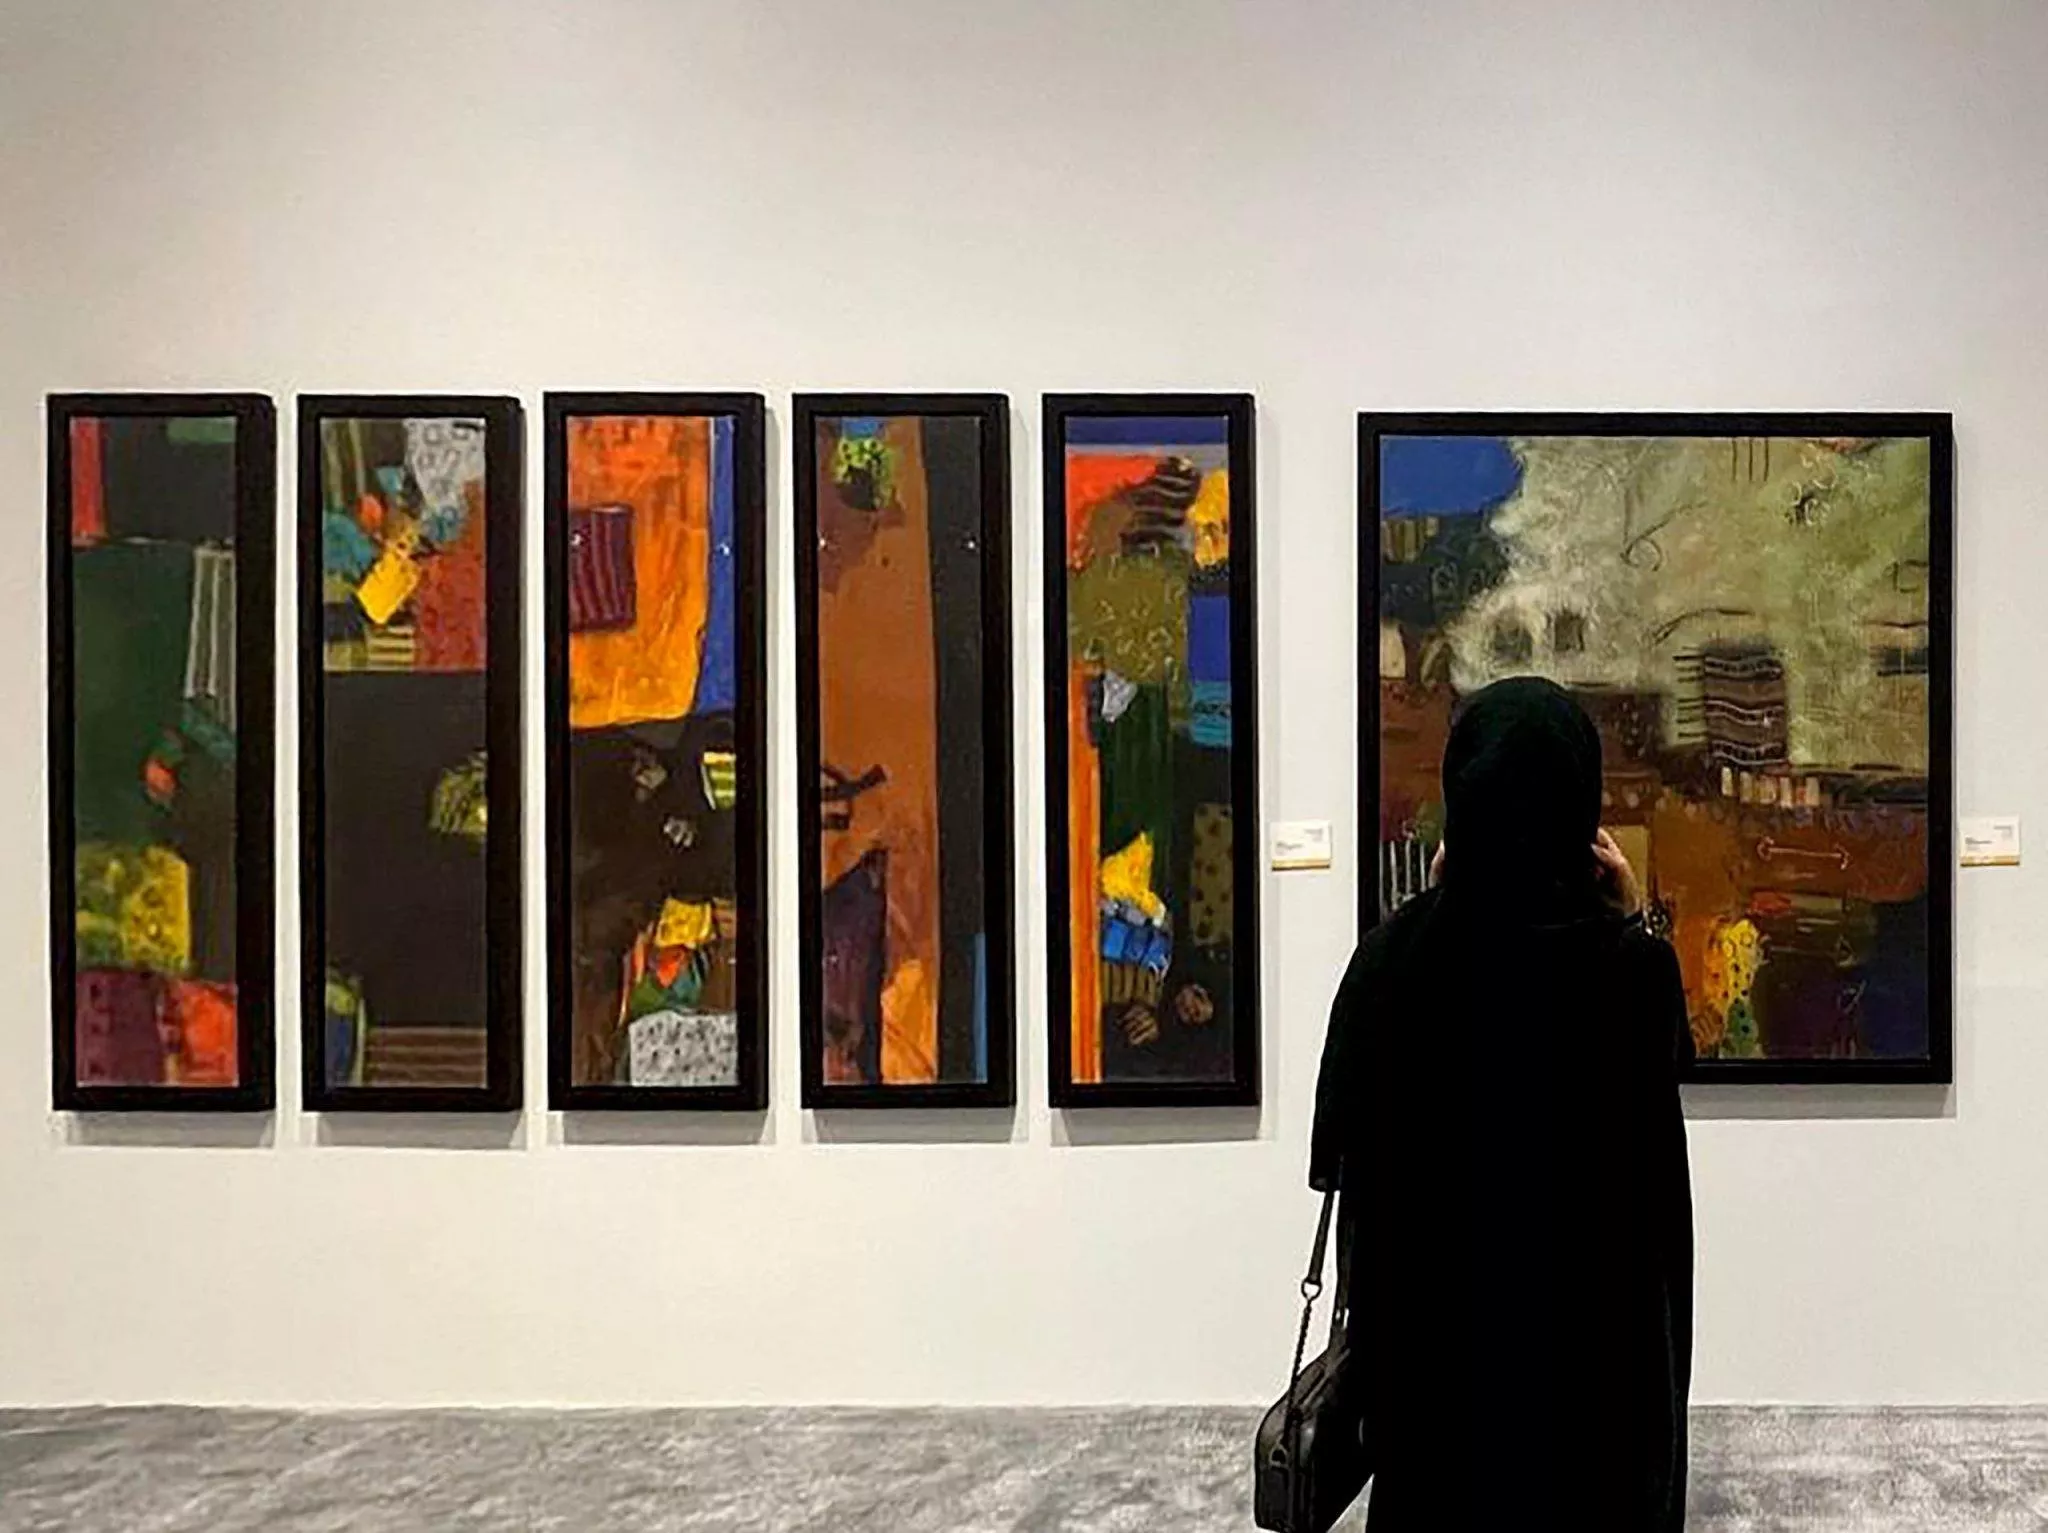 شواهد على الفن: معرض تشكيلي سعودي للوحات حُفظت طوال نصف قرن